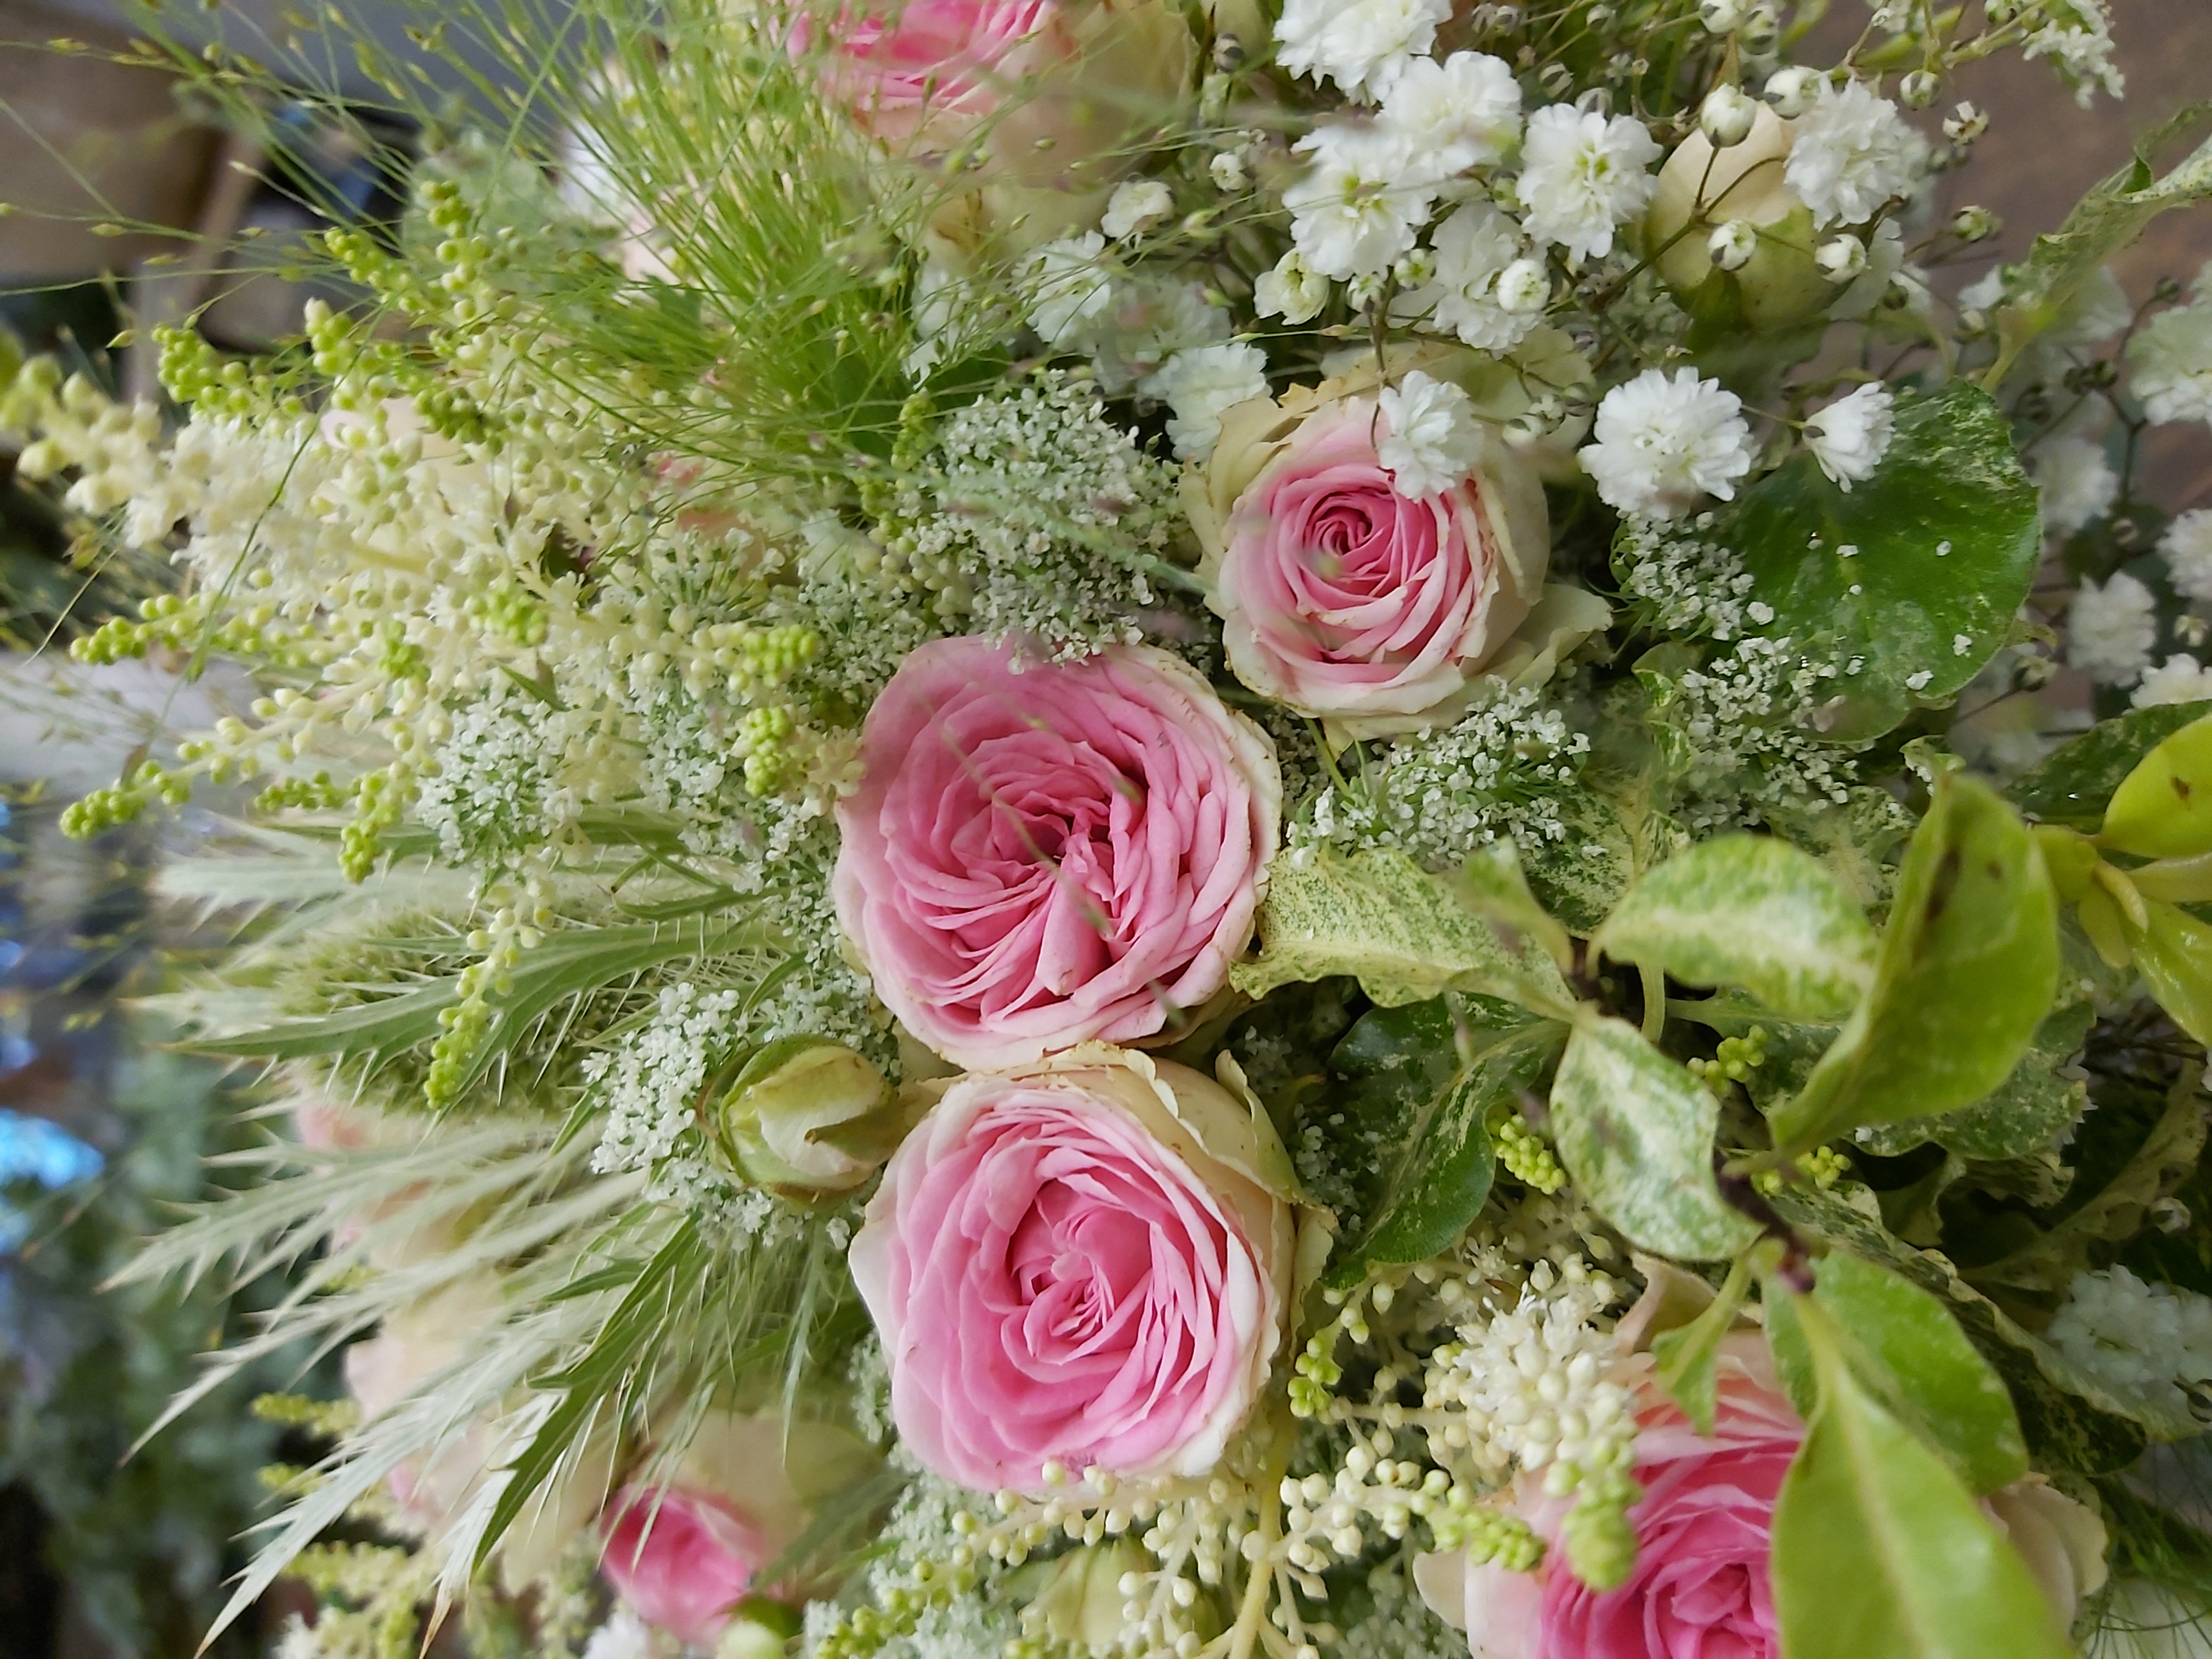 d’un bouquet composé de rosettes mini eden, chardons blancs, dille, panicum, gypsophile.